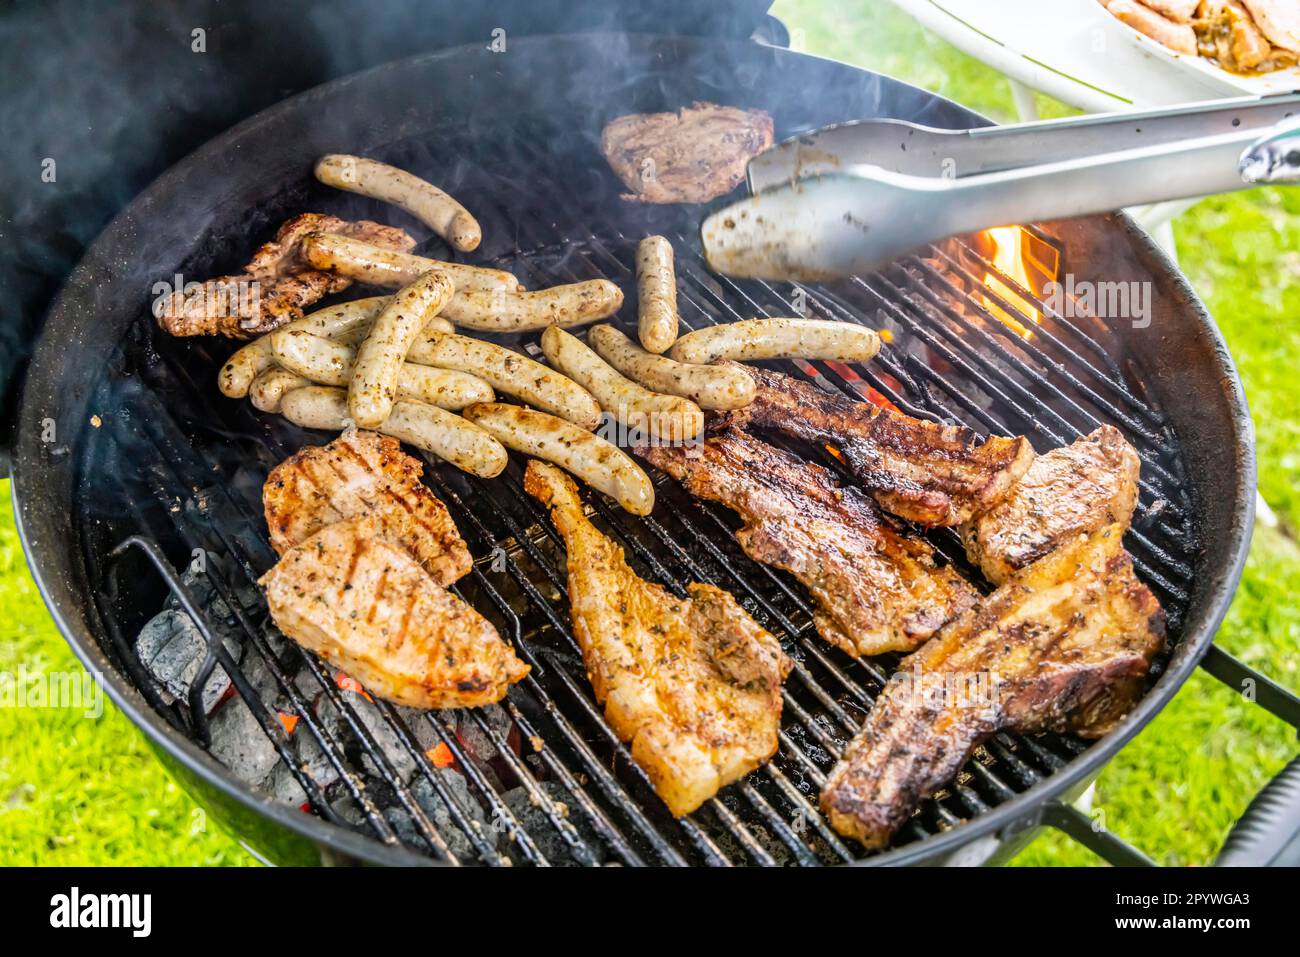 Barbecue im Garten, Steaks und Würstchen auf einem Grill, Stuttgart, Baden- Württemberg, Deutschland Stockfotografie - Alamy